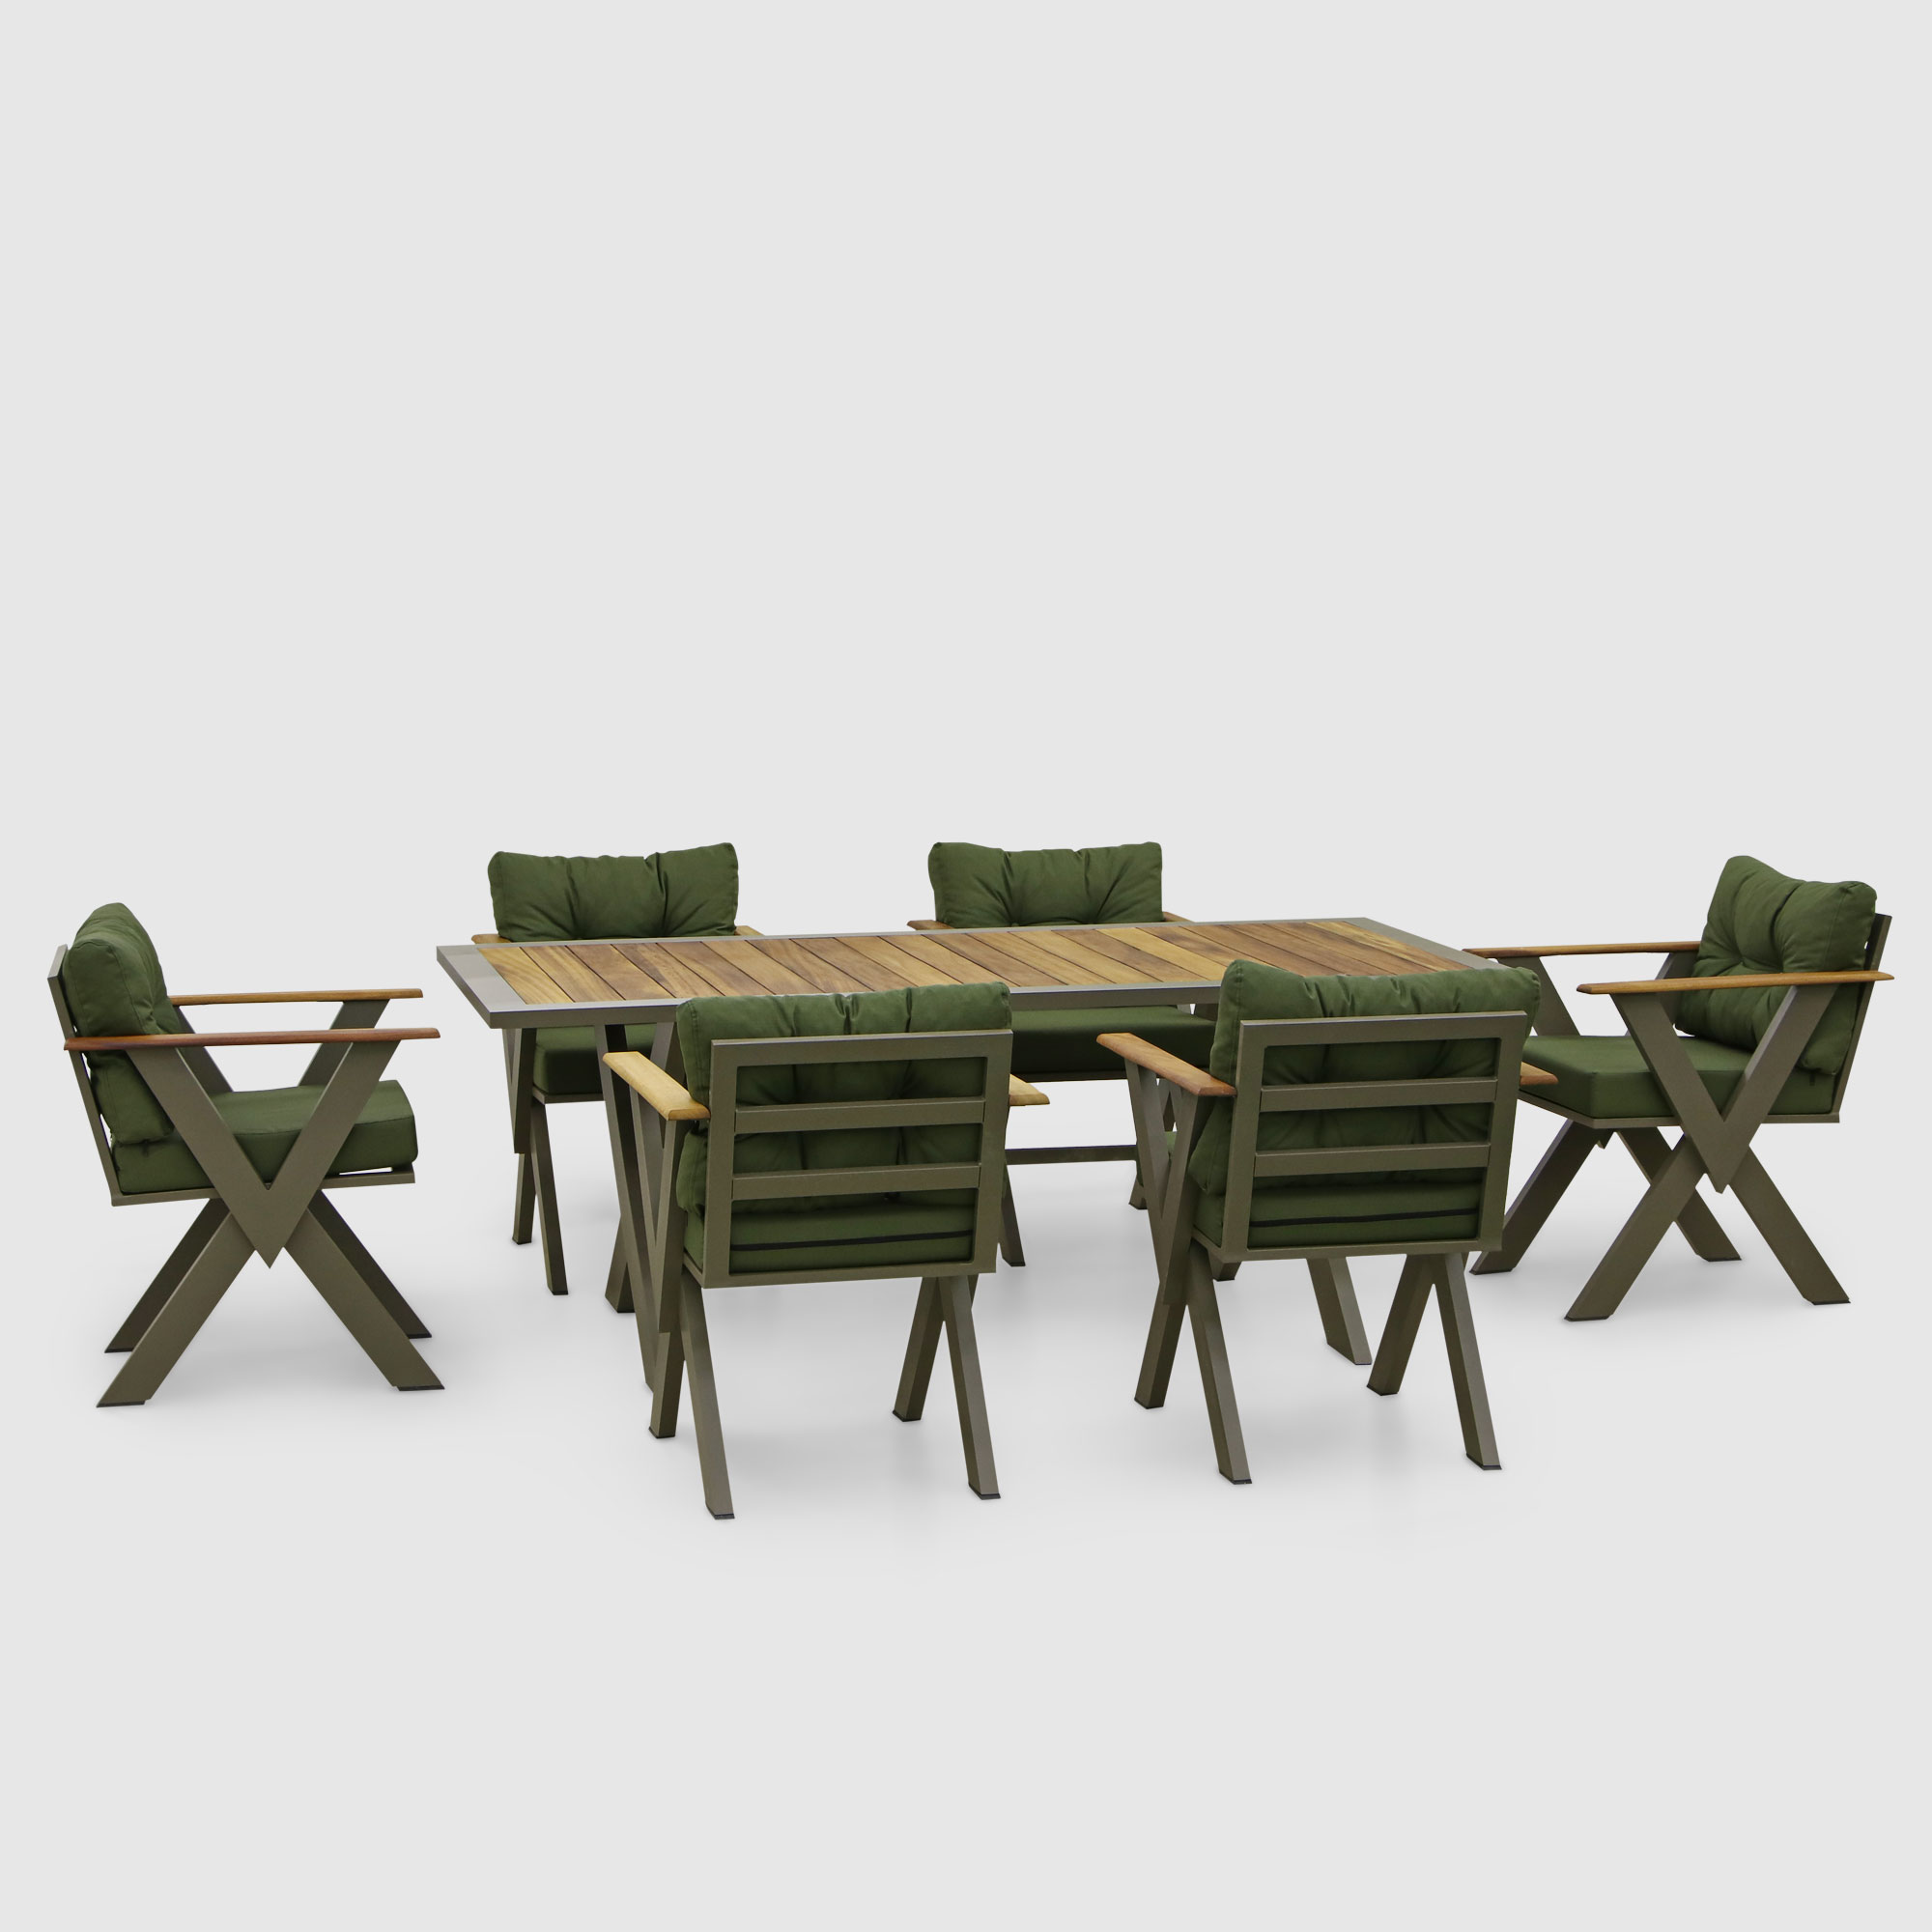 Комплект мебели Emek garden Toledo зеленый 7 предметов, цвет оливковый, размер 60х80х70